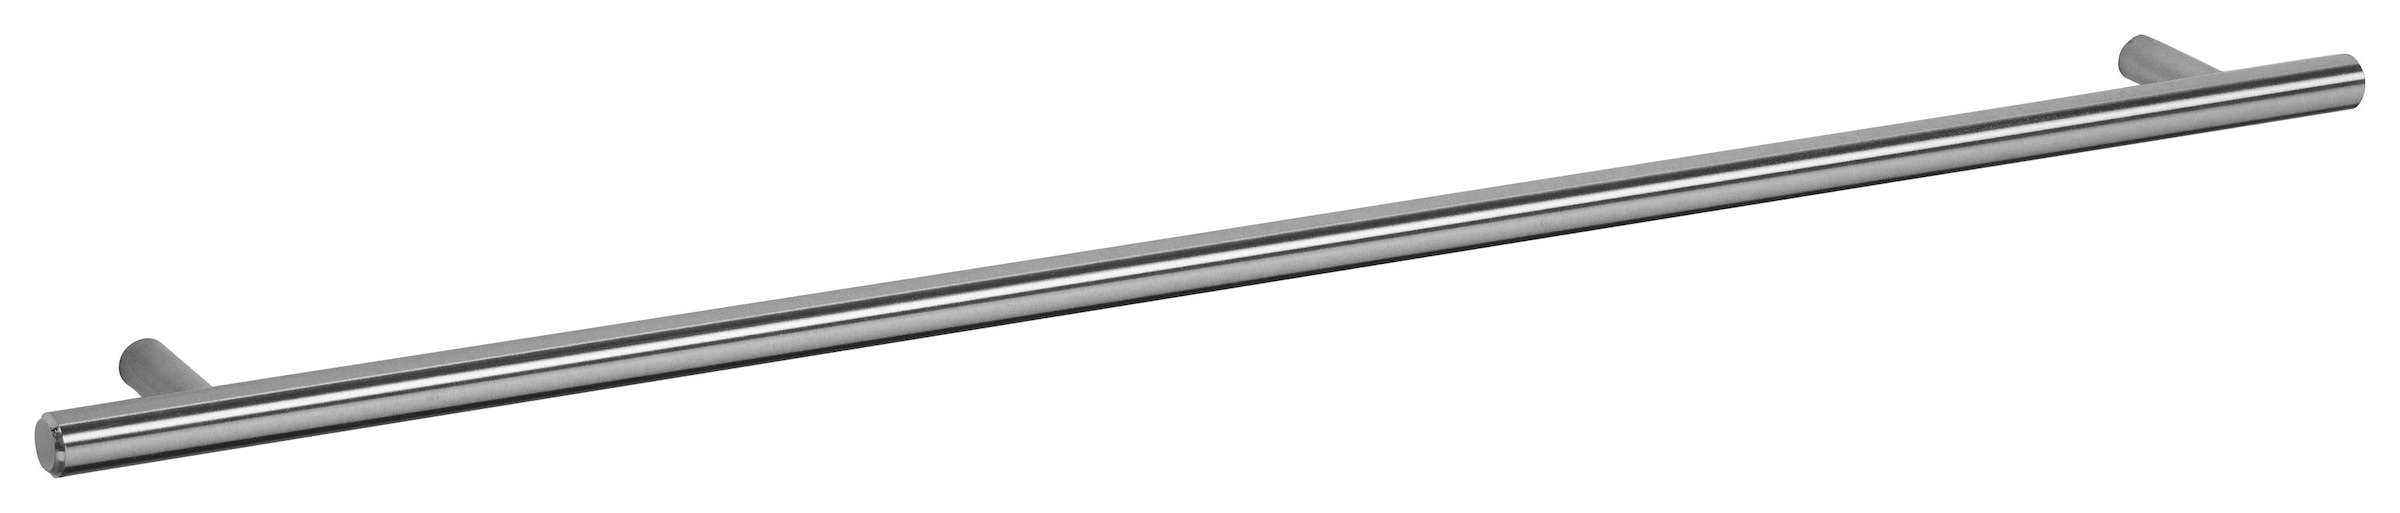 OPTIFIT Backofen/Kühlumbauschrank »Bern«, 60 cm breit, 176 cm hoch,  höhenverstellbare Stellfüße, mit Metallgriff auf Rechnung kaufen